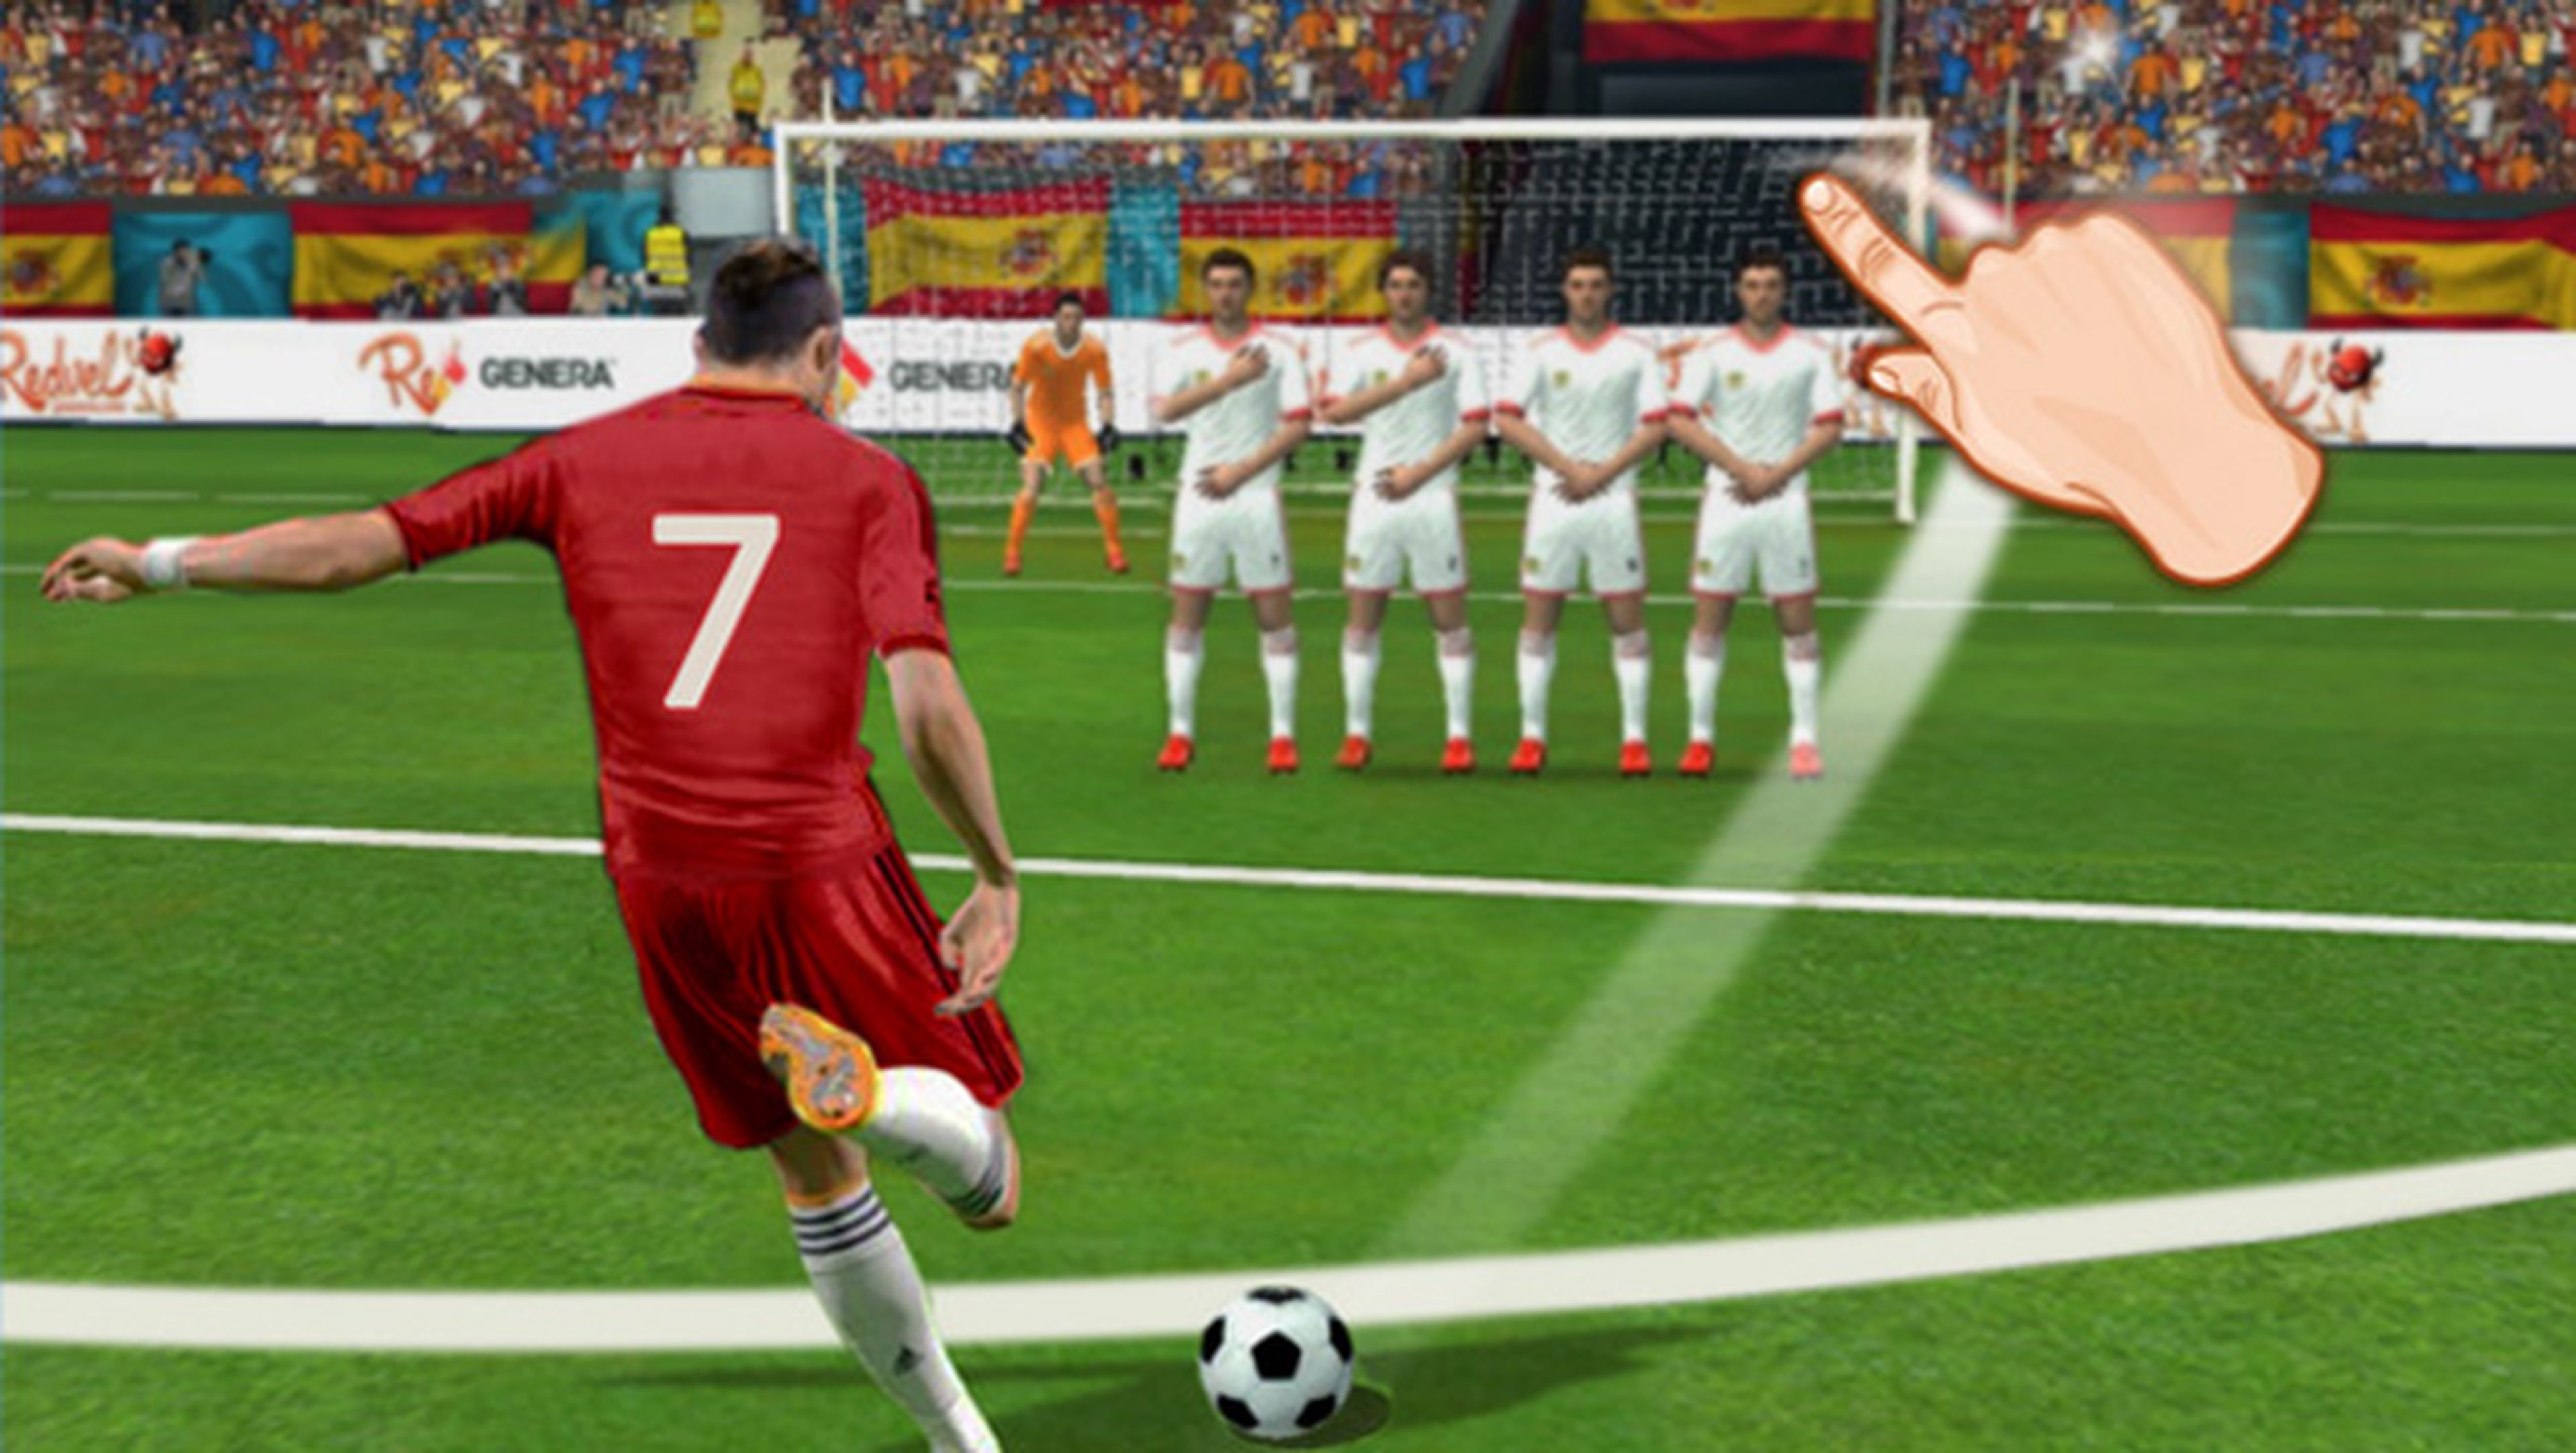 Los 7 mejores juegos Android gratis de fútbol